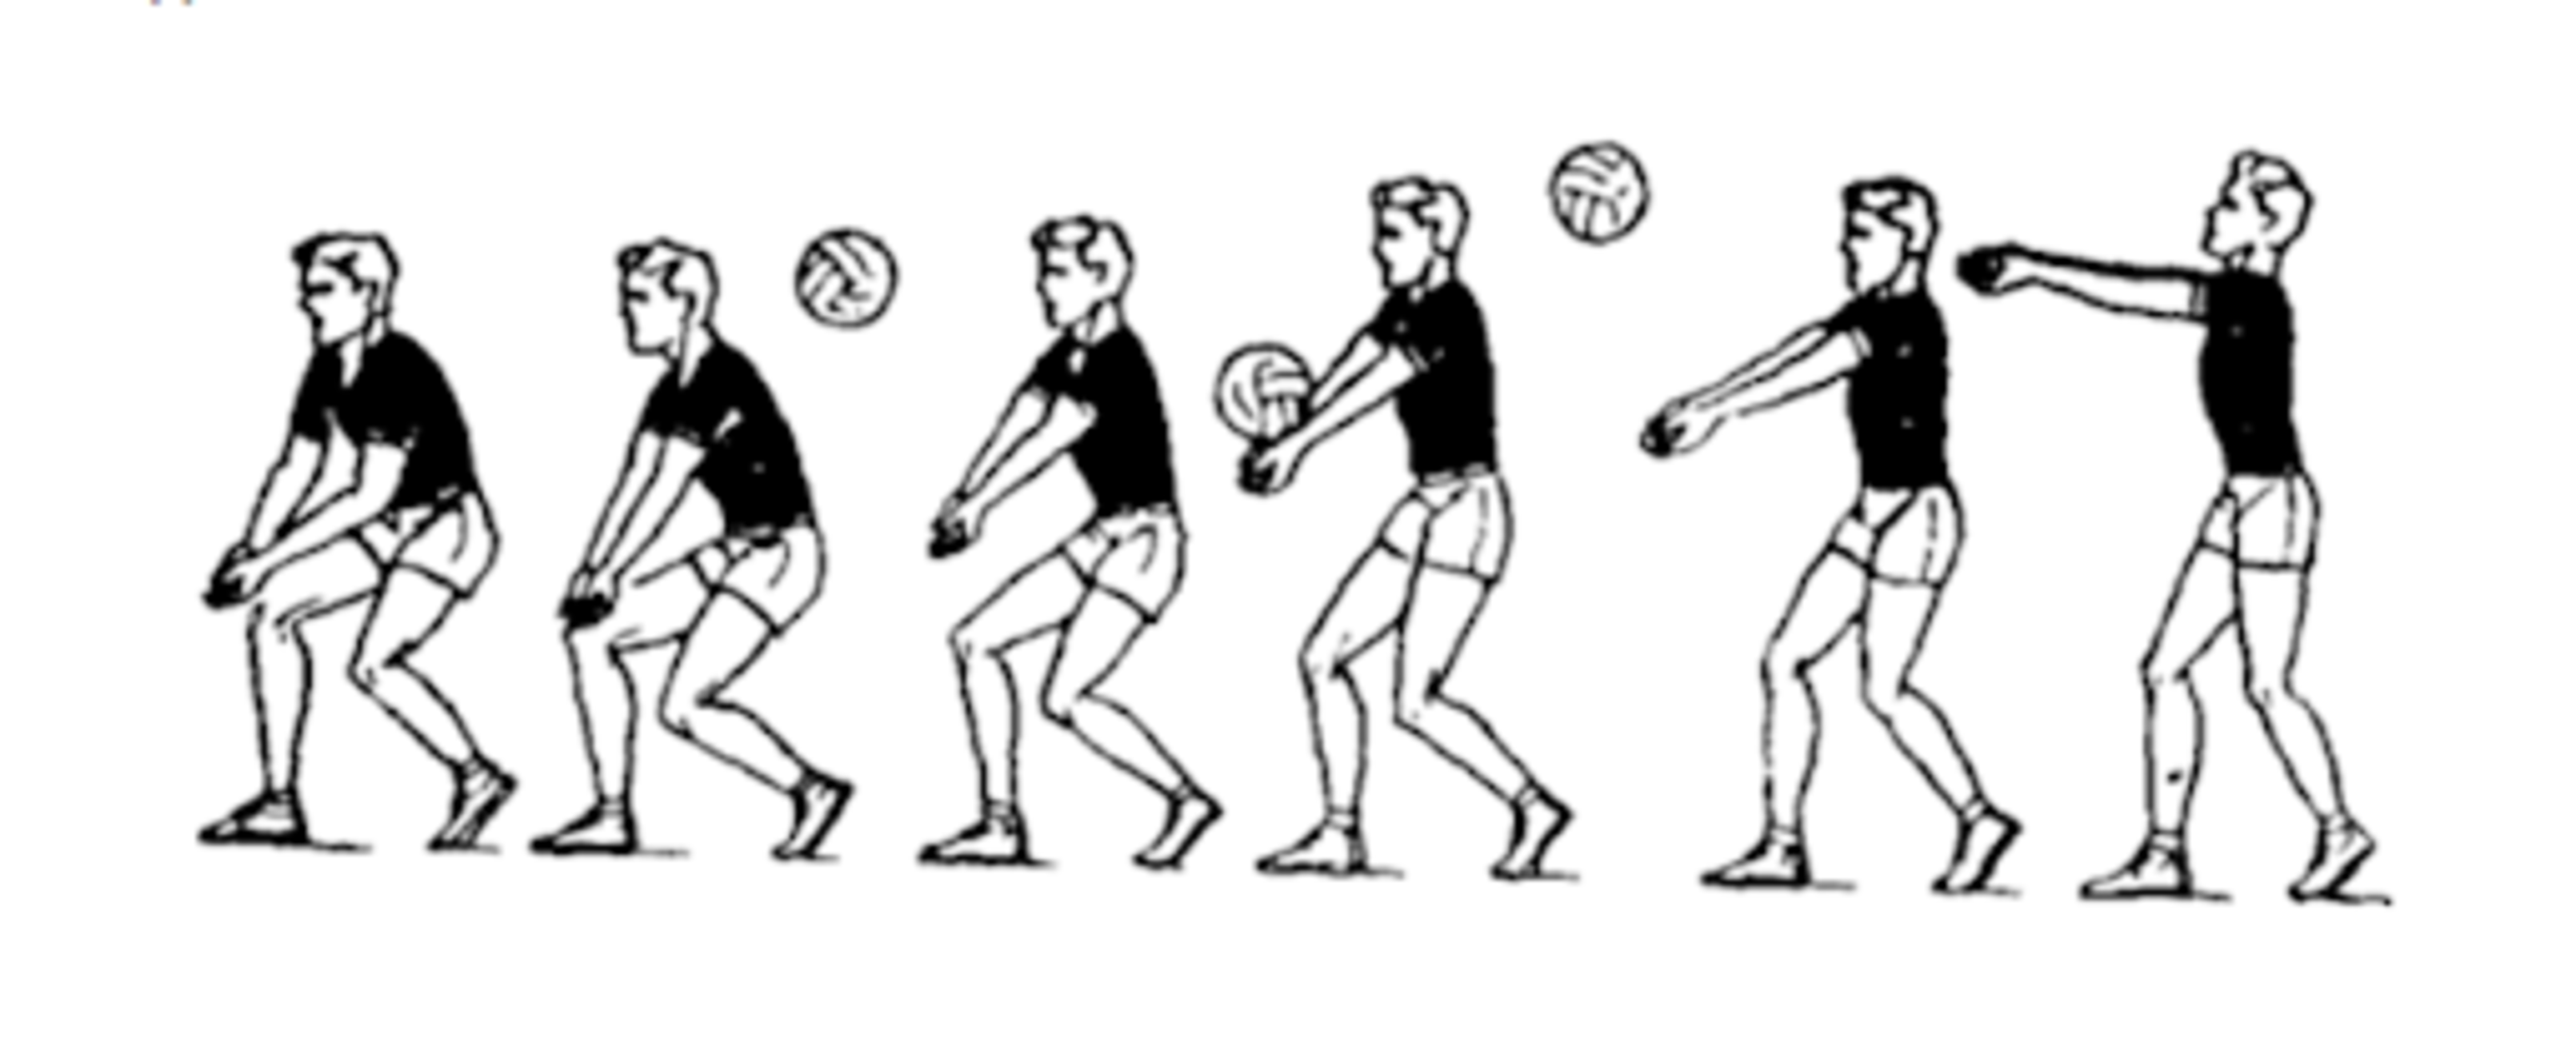 Подача одной рукой снизу. Техника приема и передачи мяча снизу двумя руками в волейболе. Приём мяча снизу 2 руками в волейболе. Техника приема мяча снизу двумя руками. Прием снизу двумя руками в волейболе.